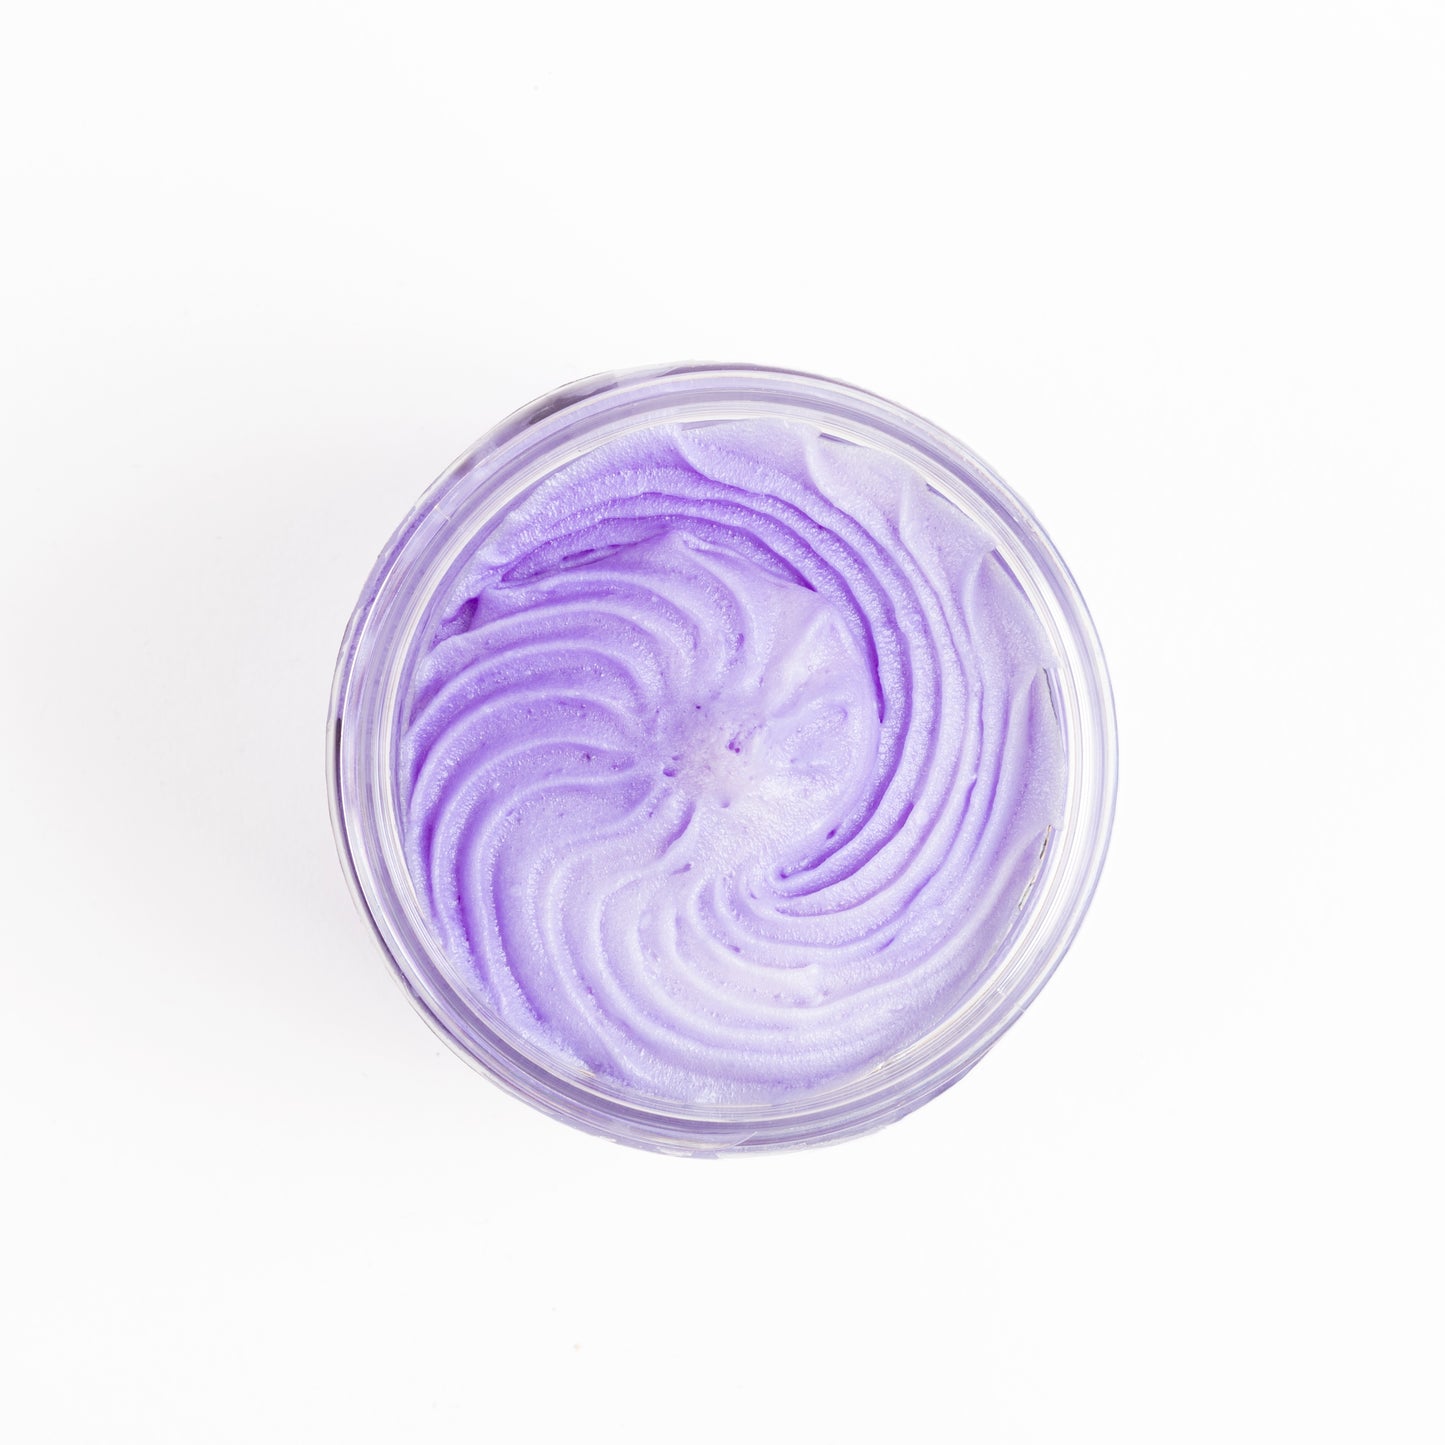 Lavish Lavender Whipped Soap